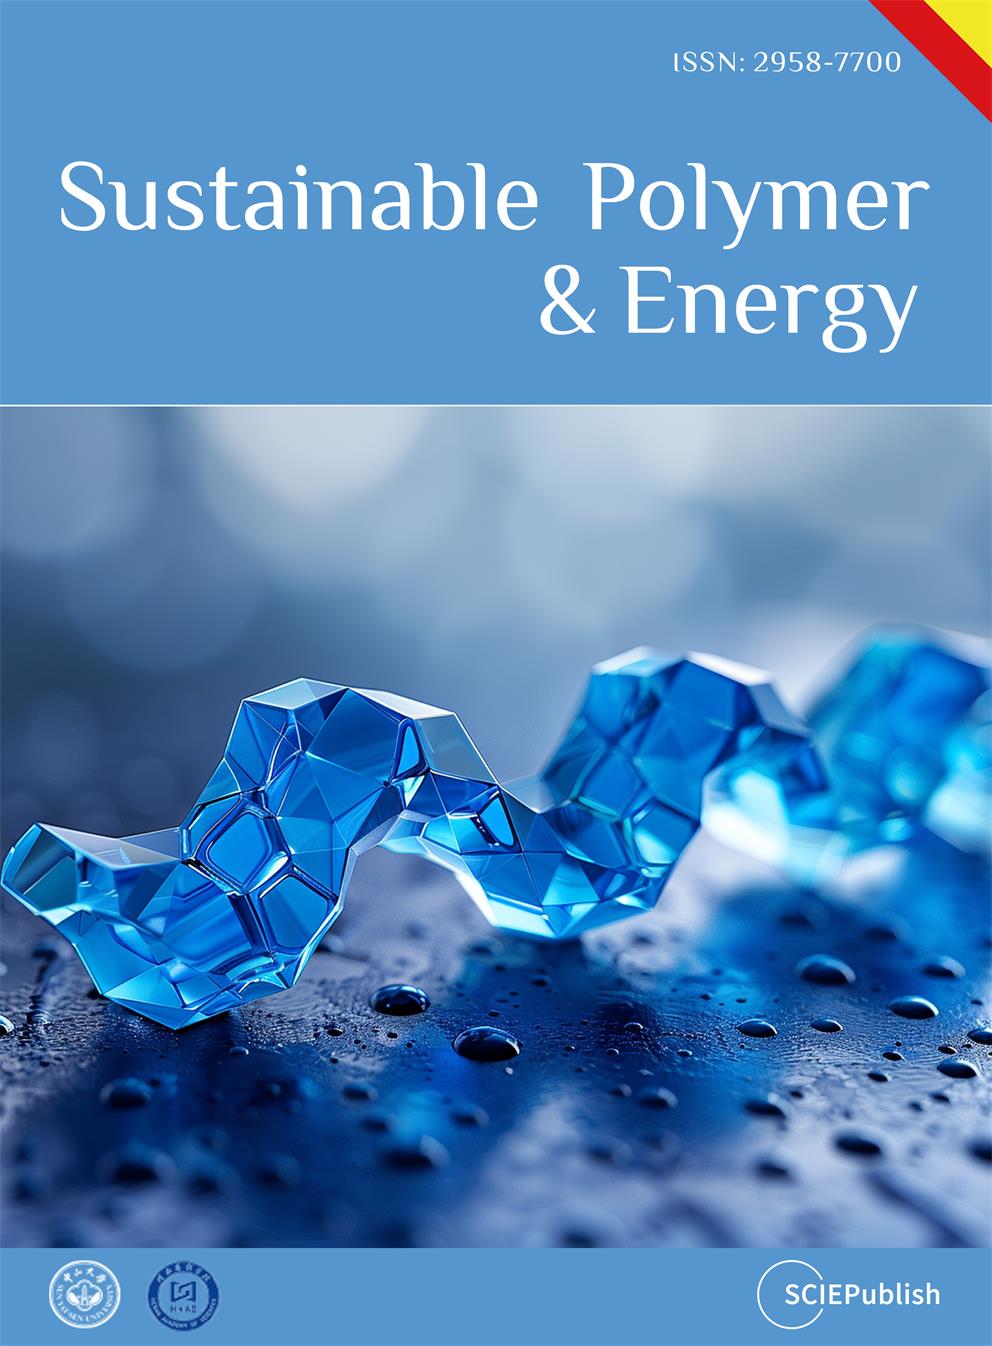 Sustainable Polymer & Energy-logo